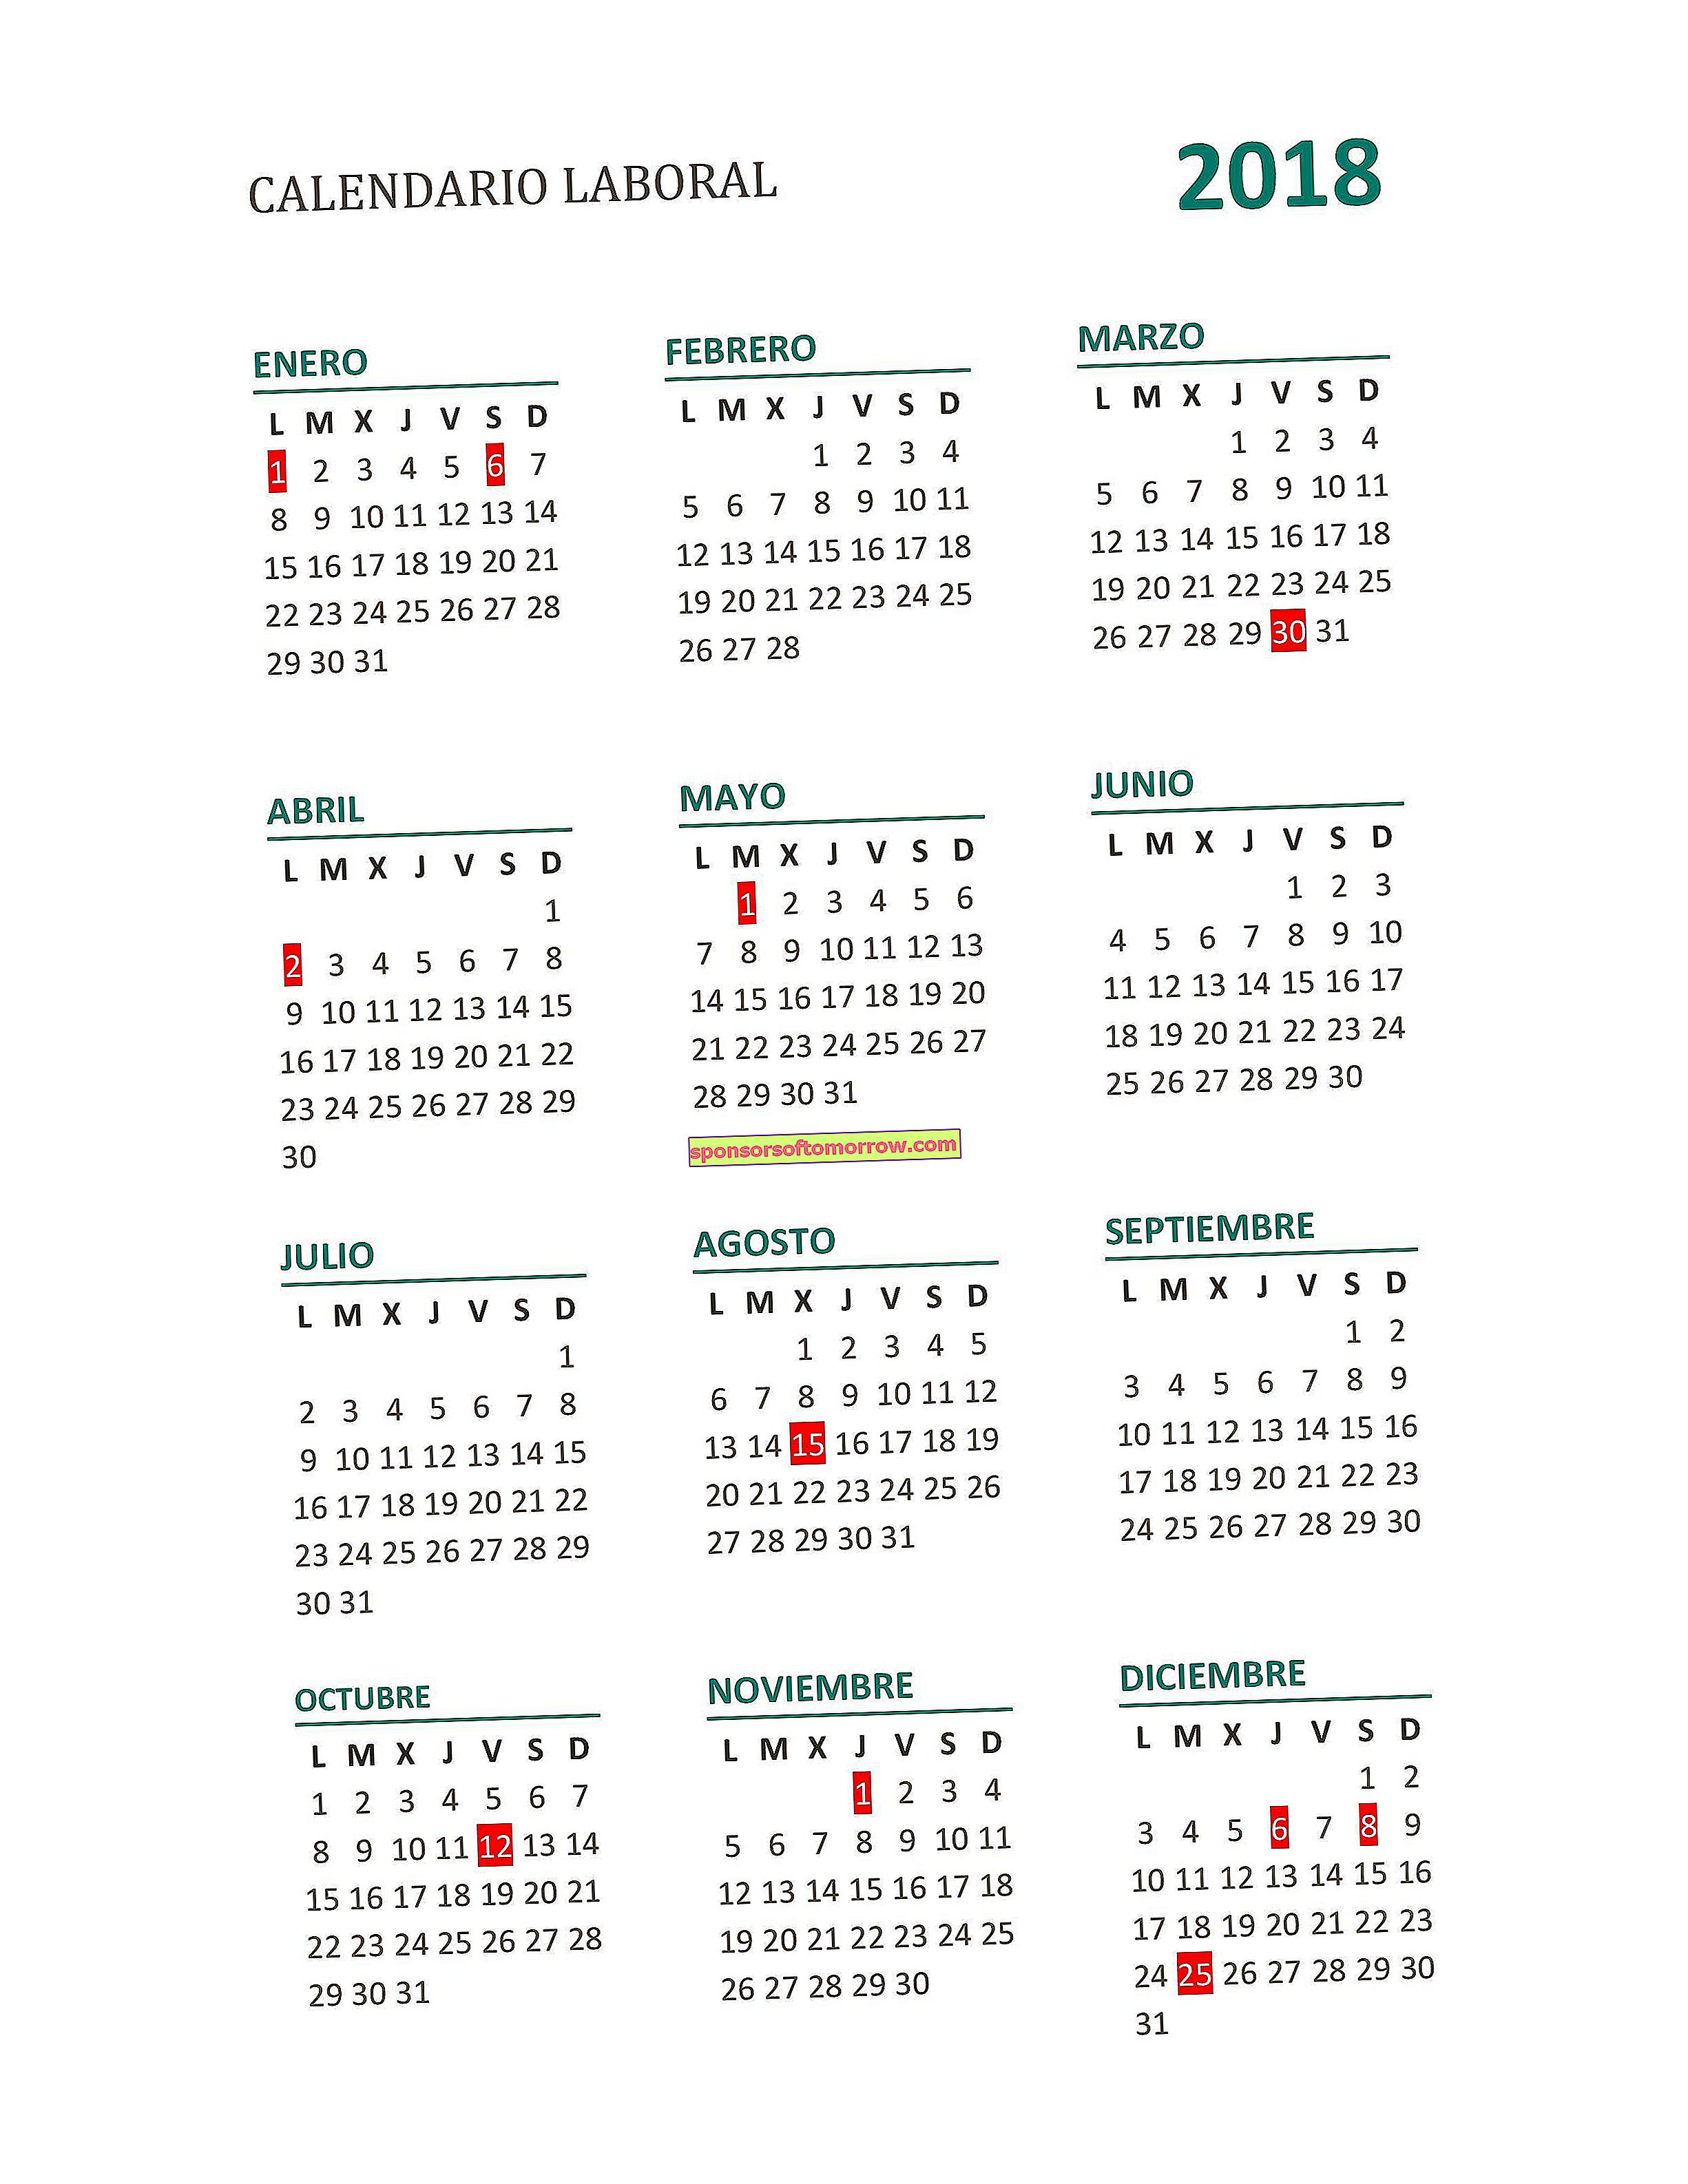 Kalendar kerja 2018 penuh